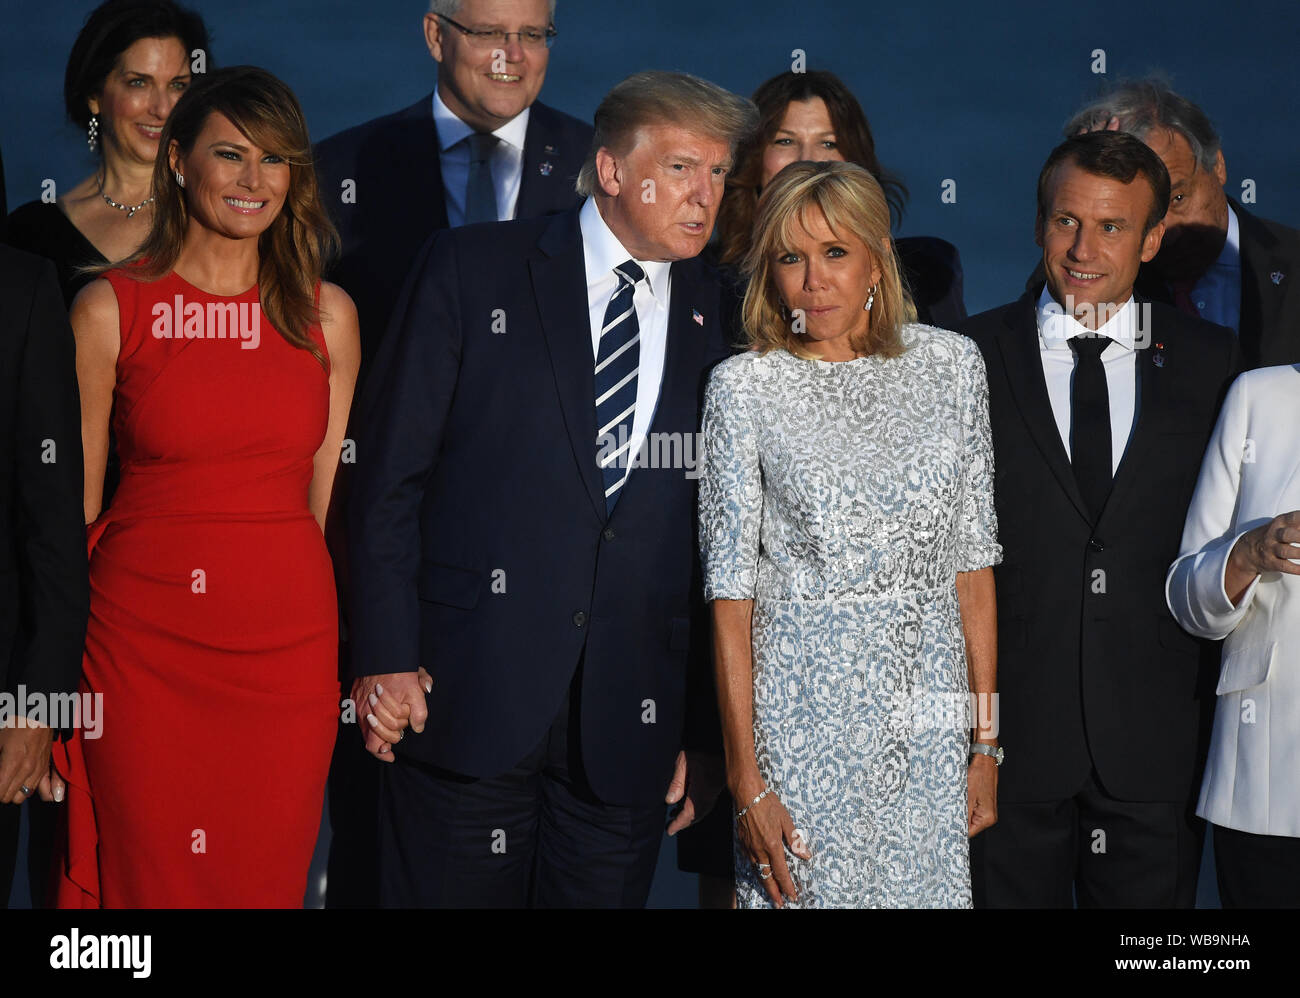 Melania Trump, Président des Etats-Unis, Donald Trump, Brigitte Macron, l'épouse du Président français, Emmanuel Macron inscrivez-vous d'autres dirigeants du monde pour la photo de famille au sommet du G7 à Biarritz, France. Banque D'Images